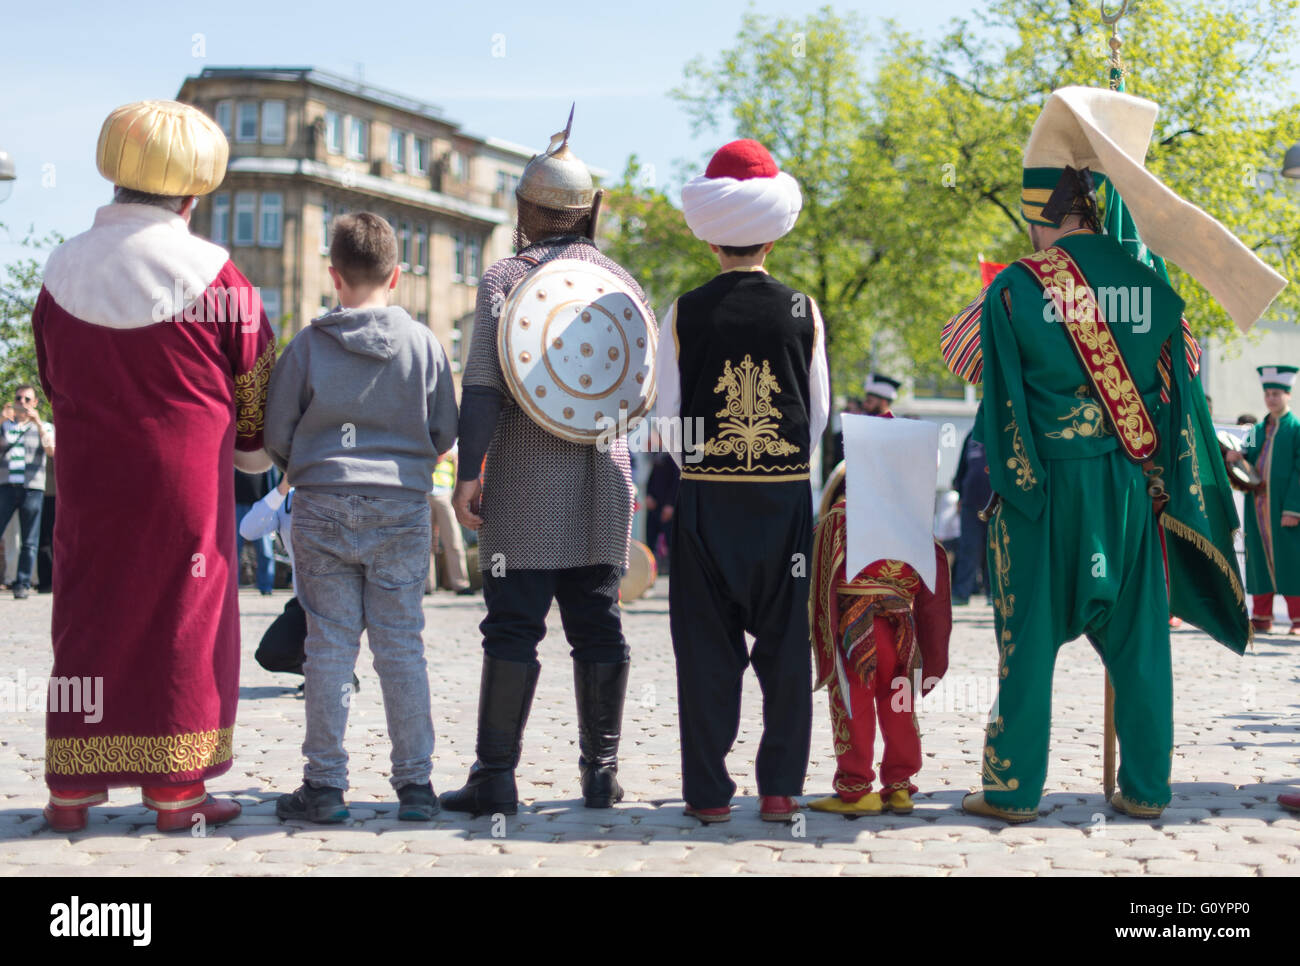 Hannover, Deutschland. 6. Mai 2016. Männer und Kinder tragen osmanischen Kostüm während einer Parade in Hannover, 6. Mai 2016. Familientag mit der türkischen Gemeinschaft Hannover vom 07. bis 8. Mai 2016 wurde bei der Parade befördert. Foto: SEBASTIAN GOLLNOW/Dpa/Alamy Live News Stockfoto